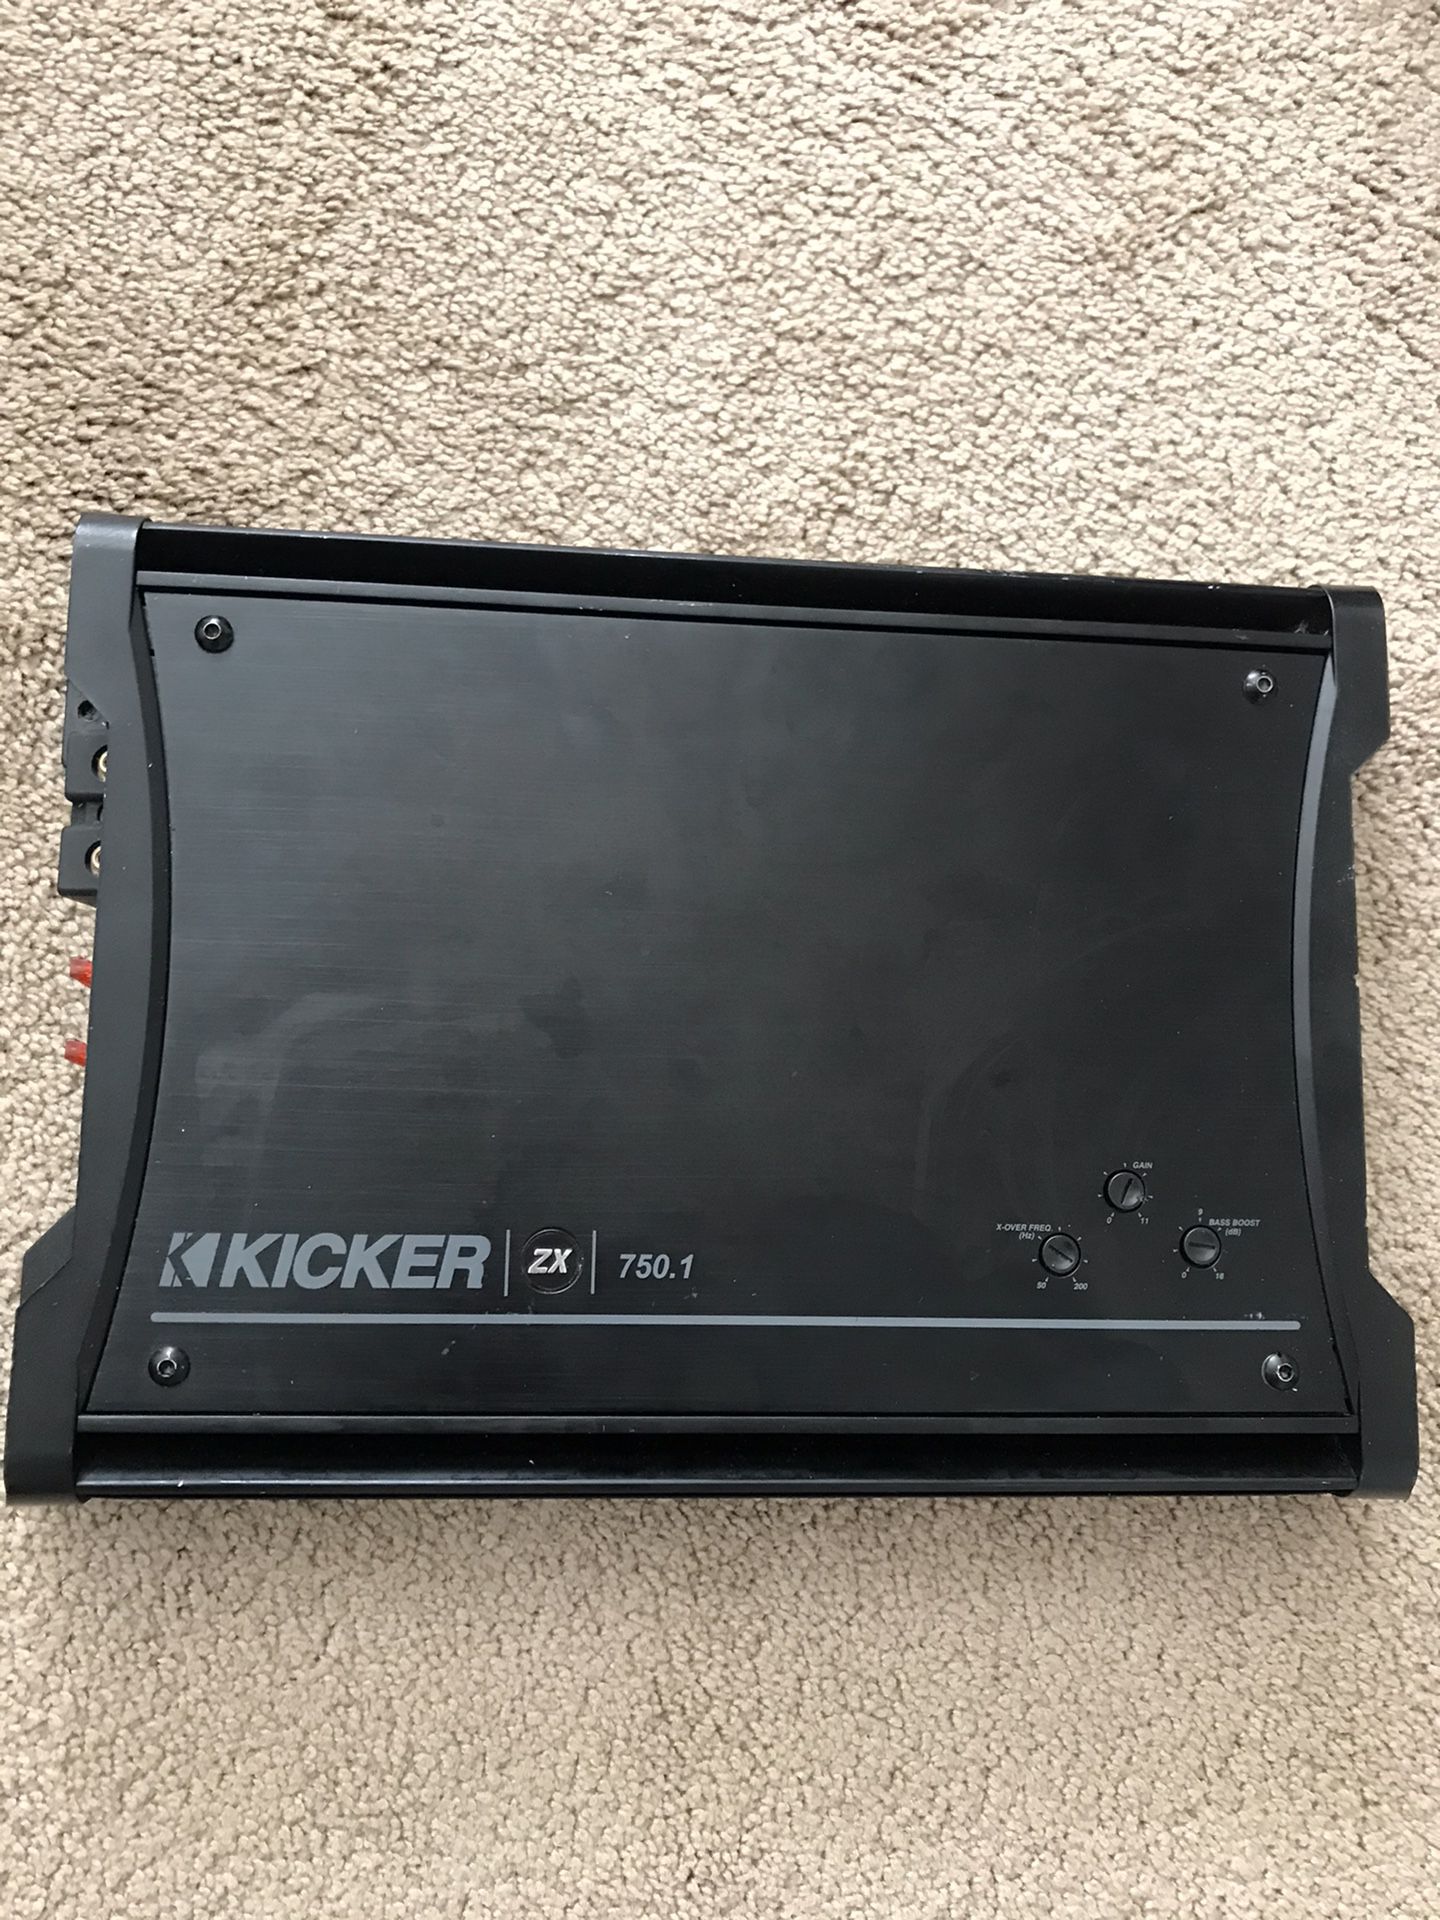 Kicker amp zx 750.1